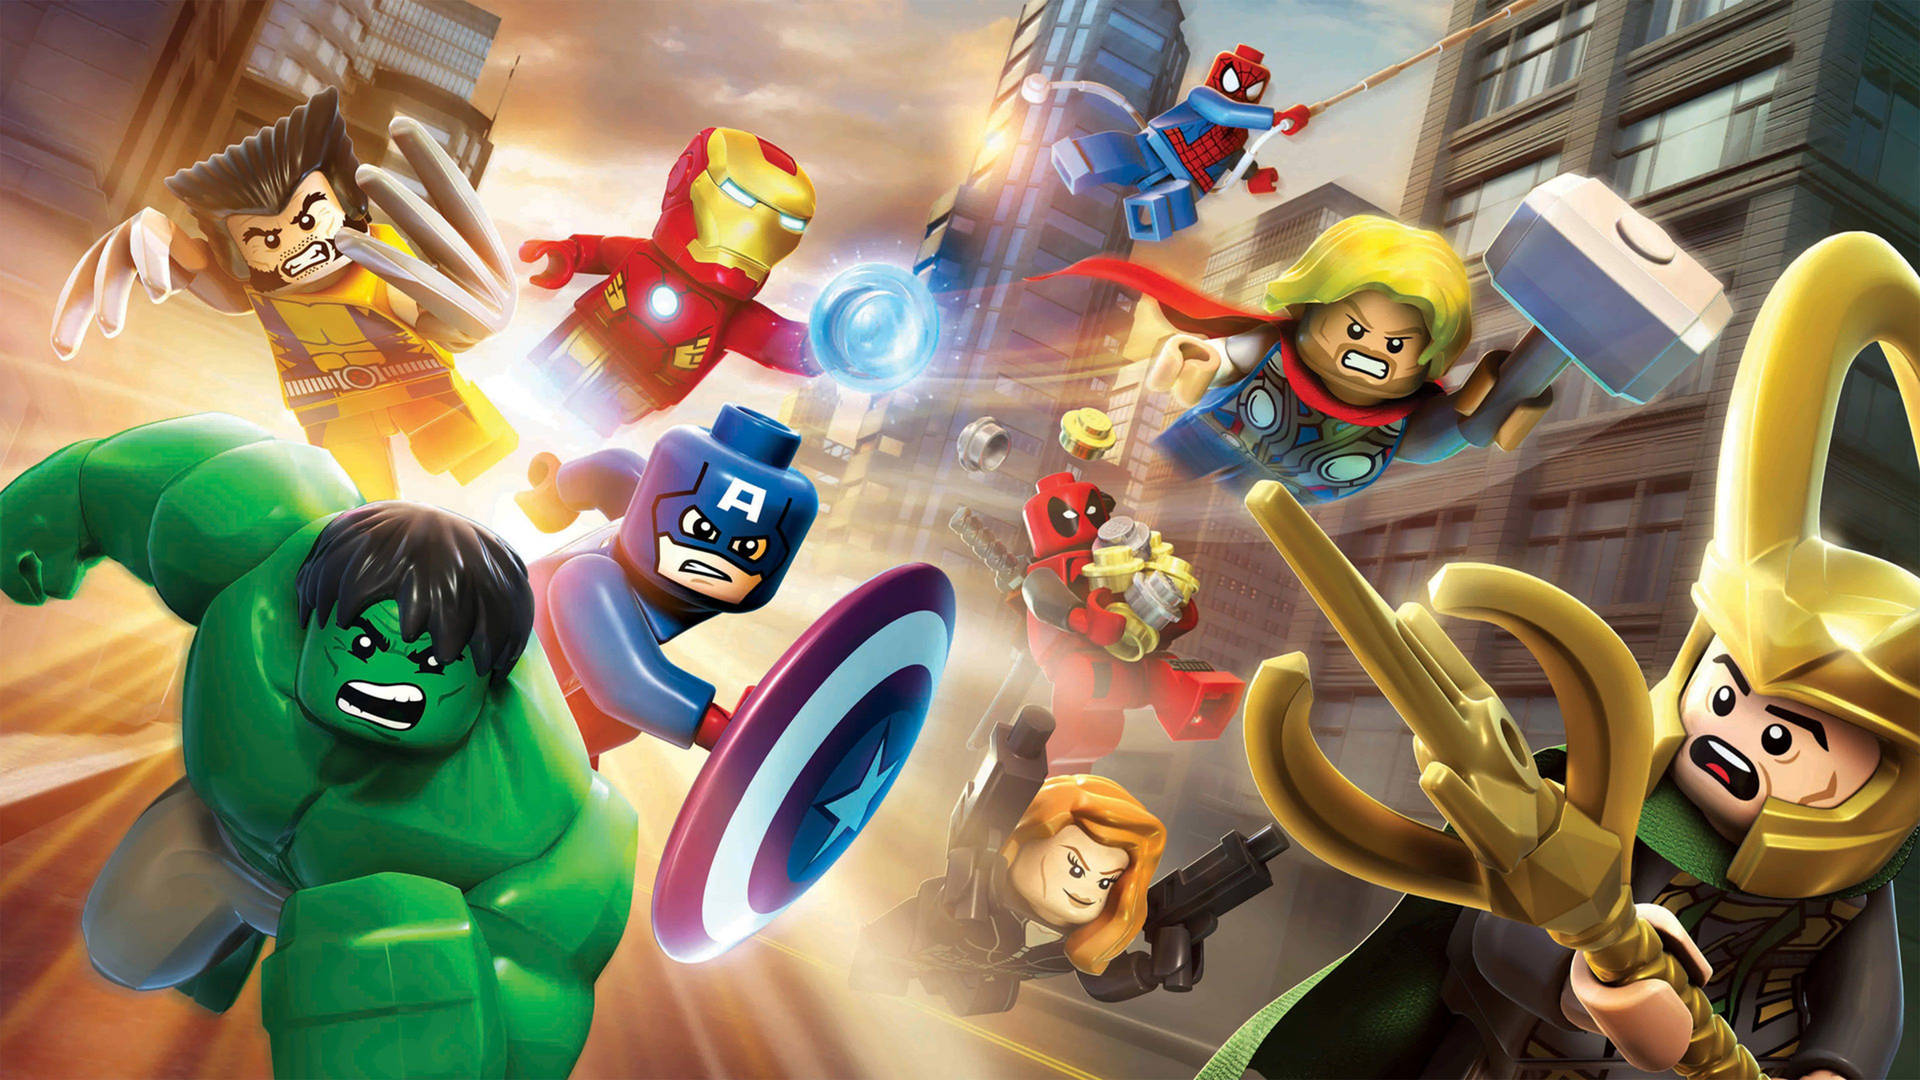 Legomarvel Avenger 3d Kan Vara En Fantastisk Dator- Eller Mobilbakgrund. Wallpaper